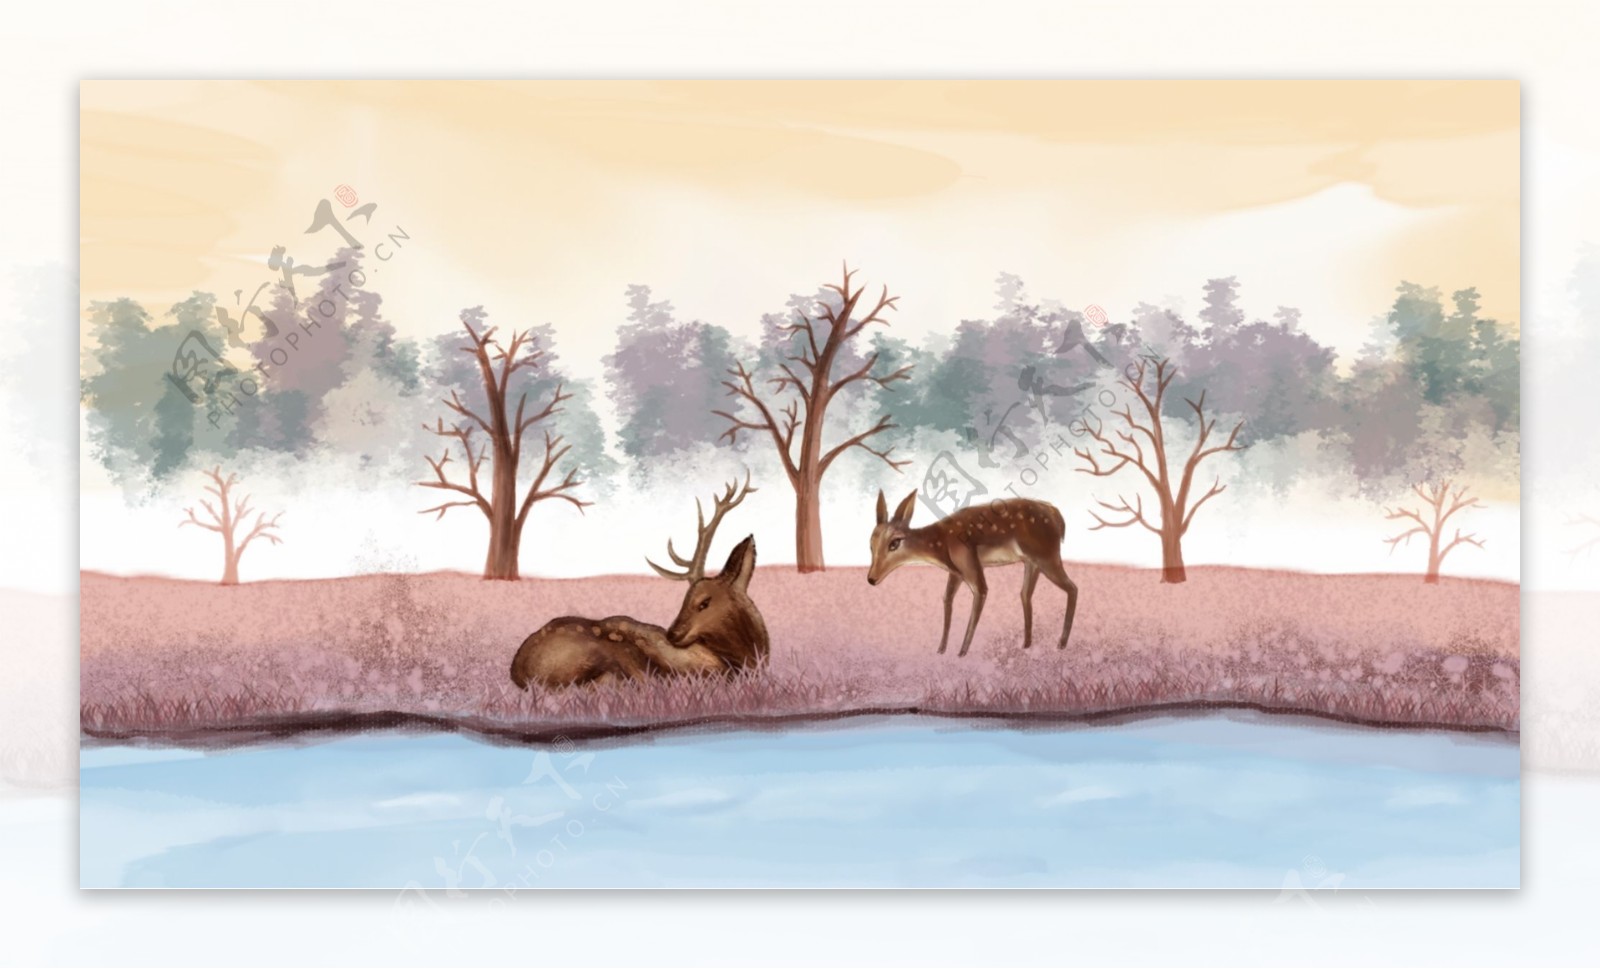 原创水墨水彩唯美插画森林与鹿